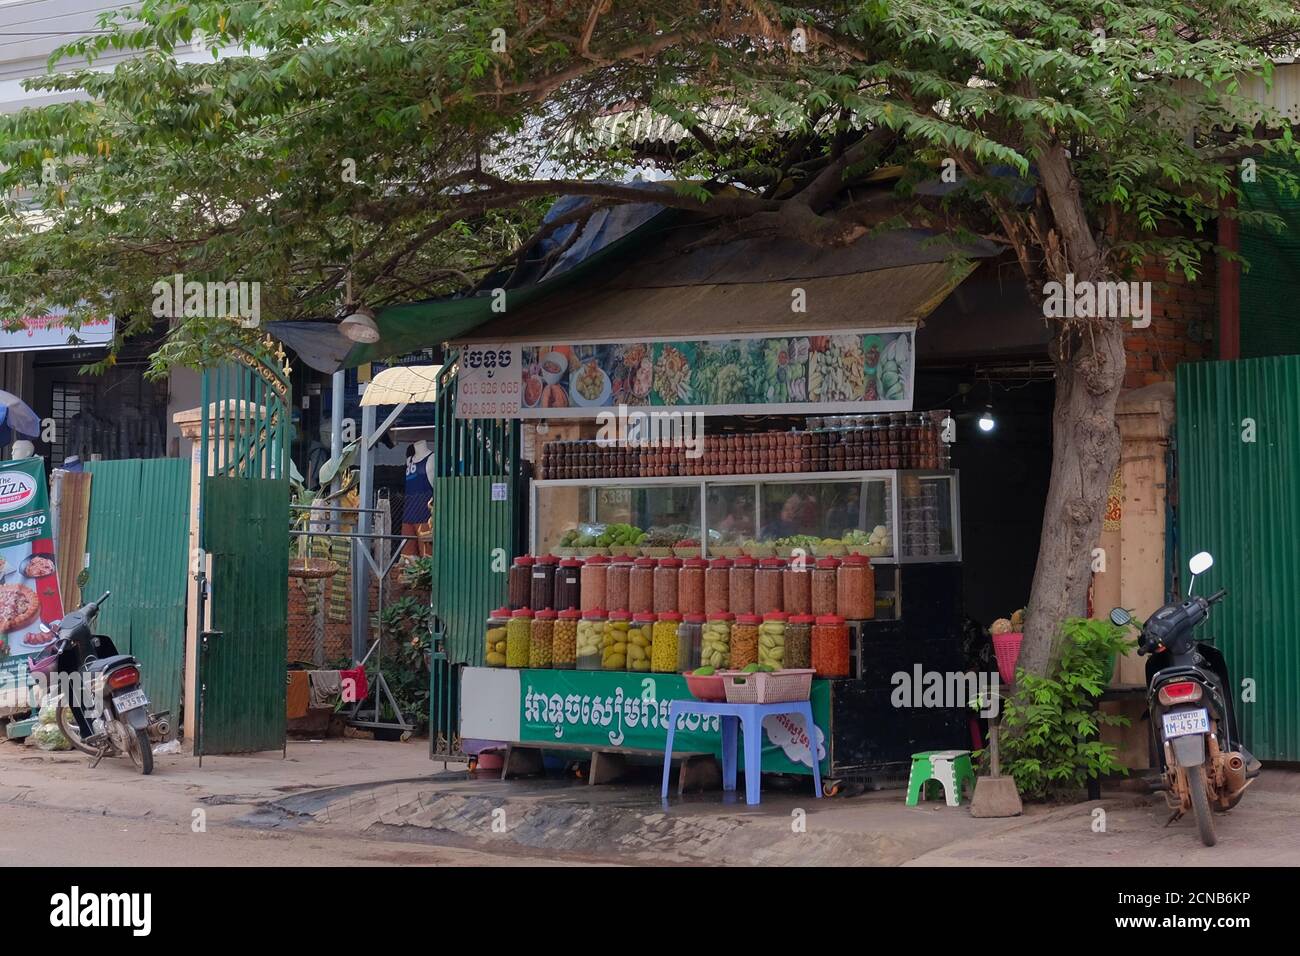 Cambogia, Siem Reap 12/08/2018 commercio di strada di spezie esotiche e frutta, un sacco di vasi multicolore con spezie, un albero vicino al chiosco Foto Stock